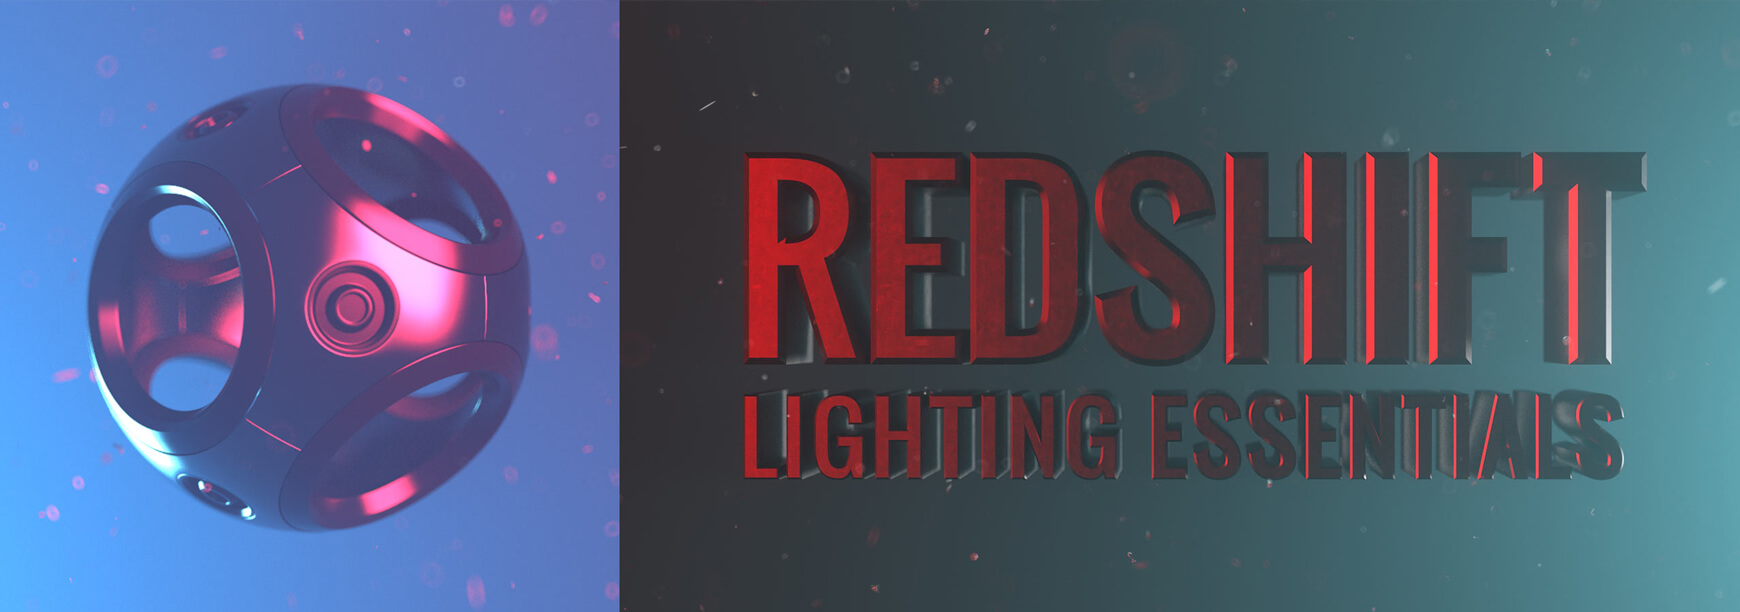 Redshift Lighting Essentials Volume 2 for Cinema 4D